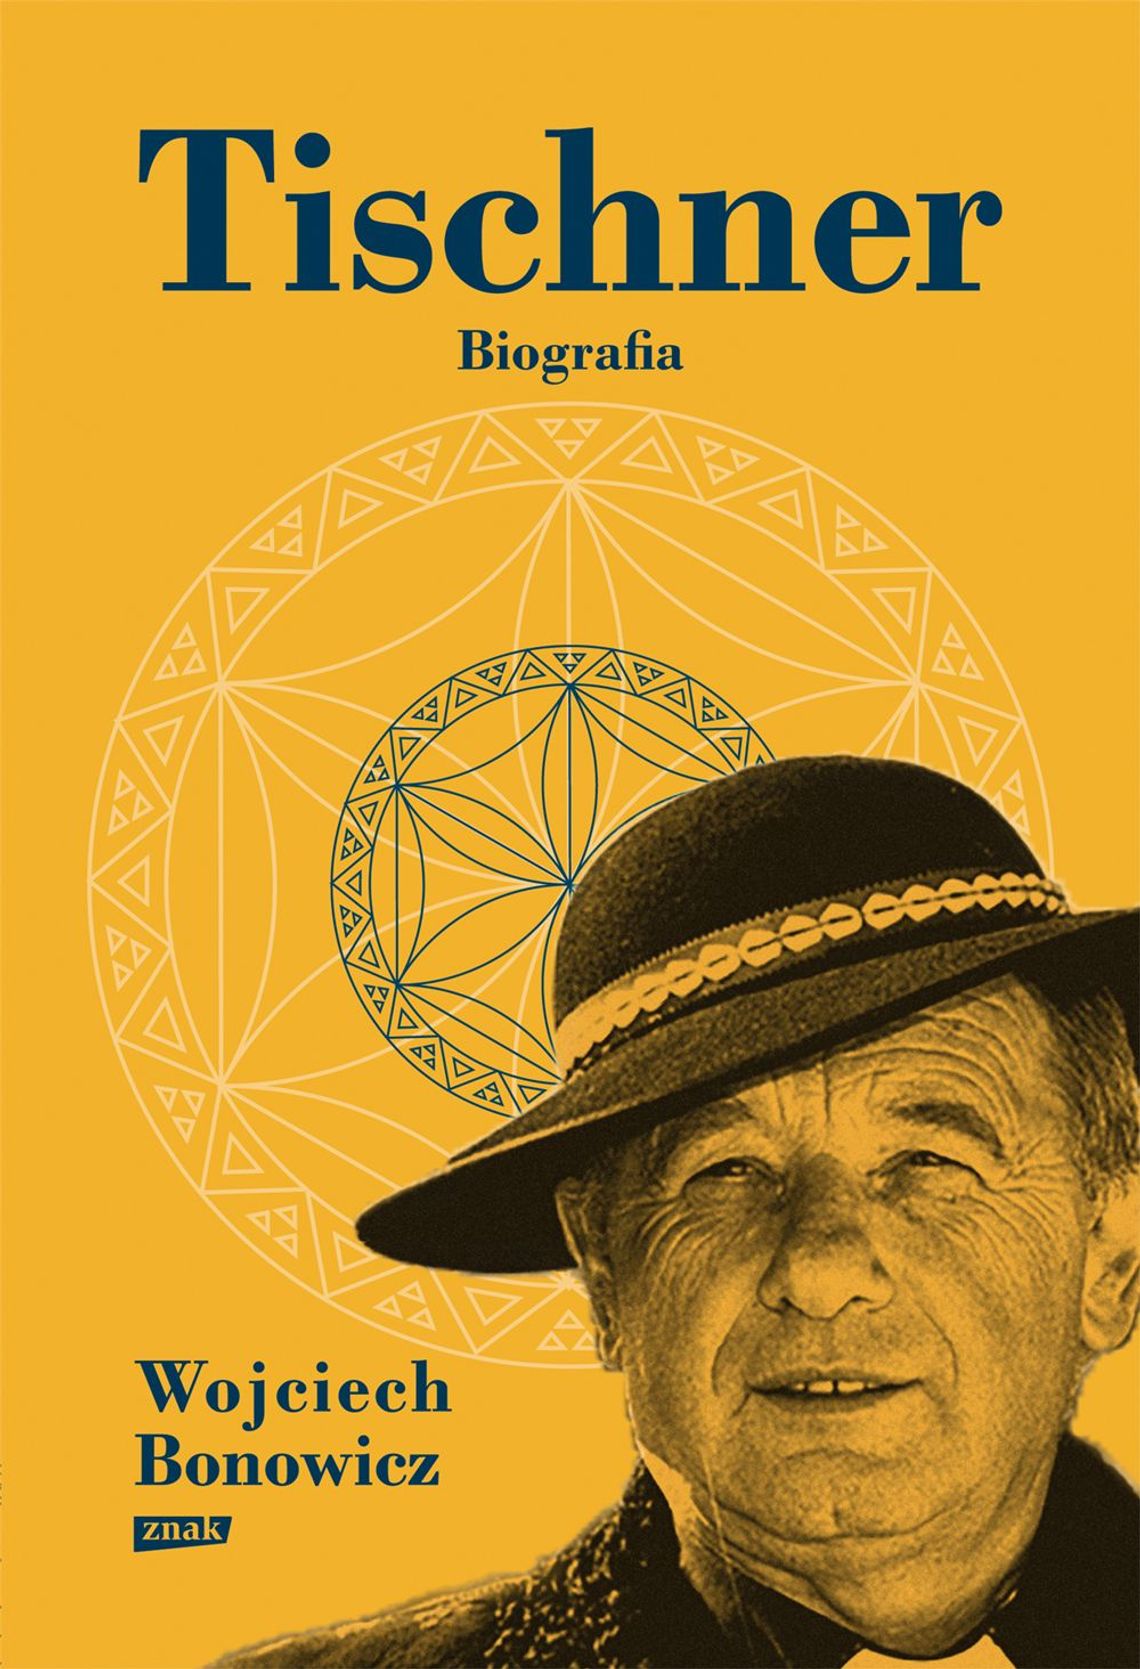  Wojciech Bonowicz „Tischner. Biografia”, wyd. Znak